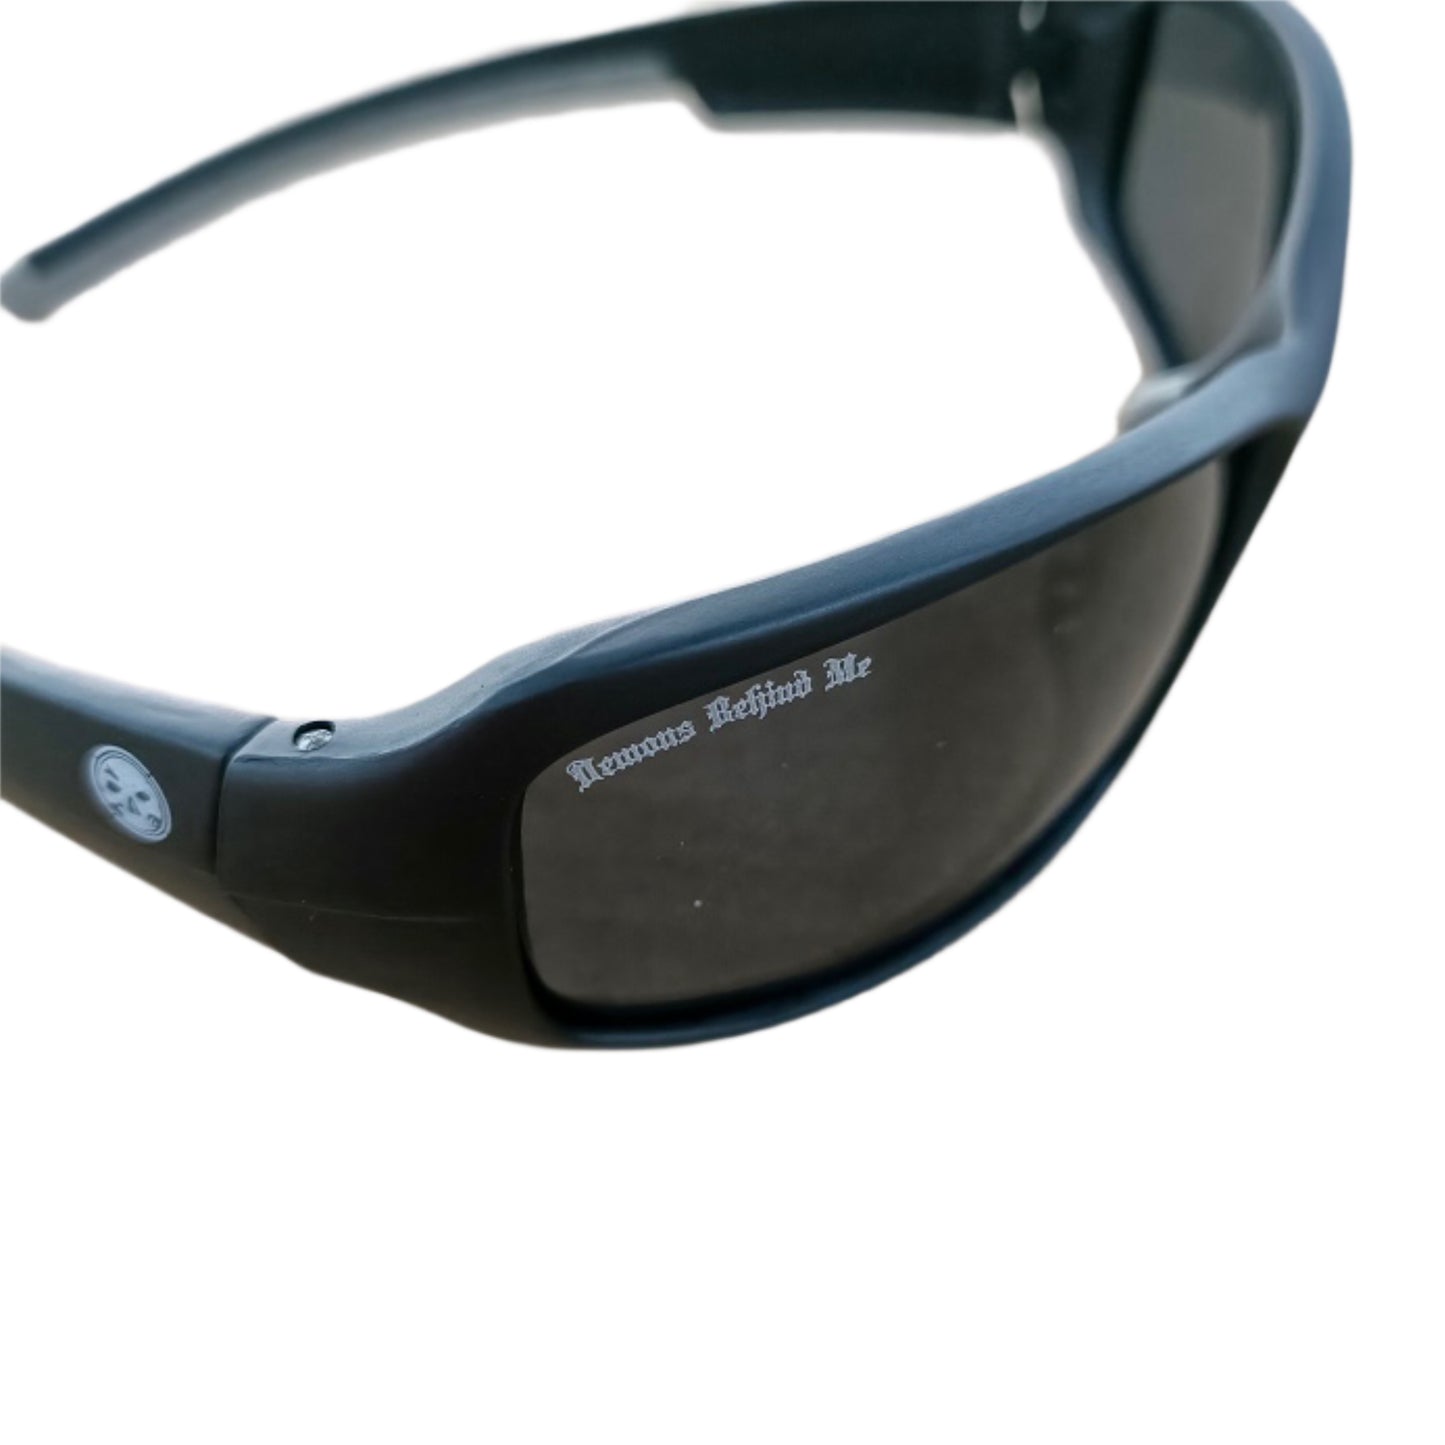 NEW! "The Cruiser" Matte Black Branded Polarized Sunglasses